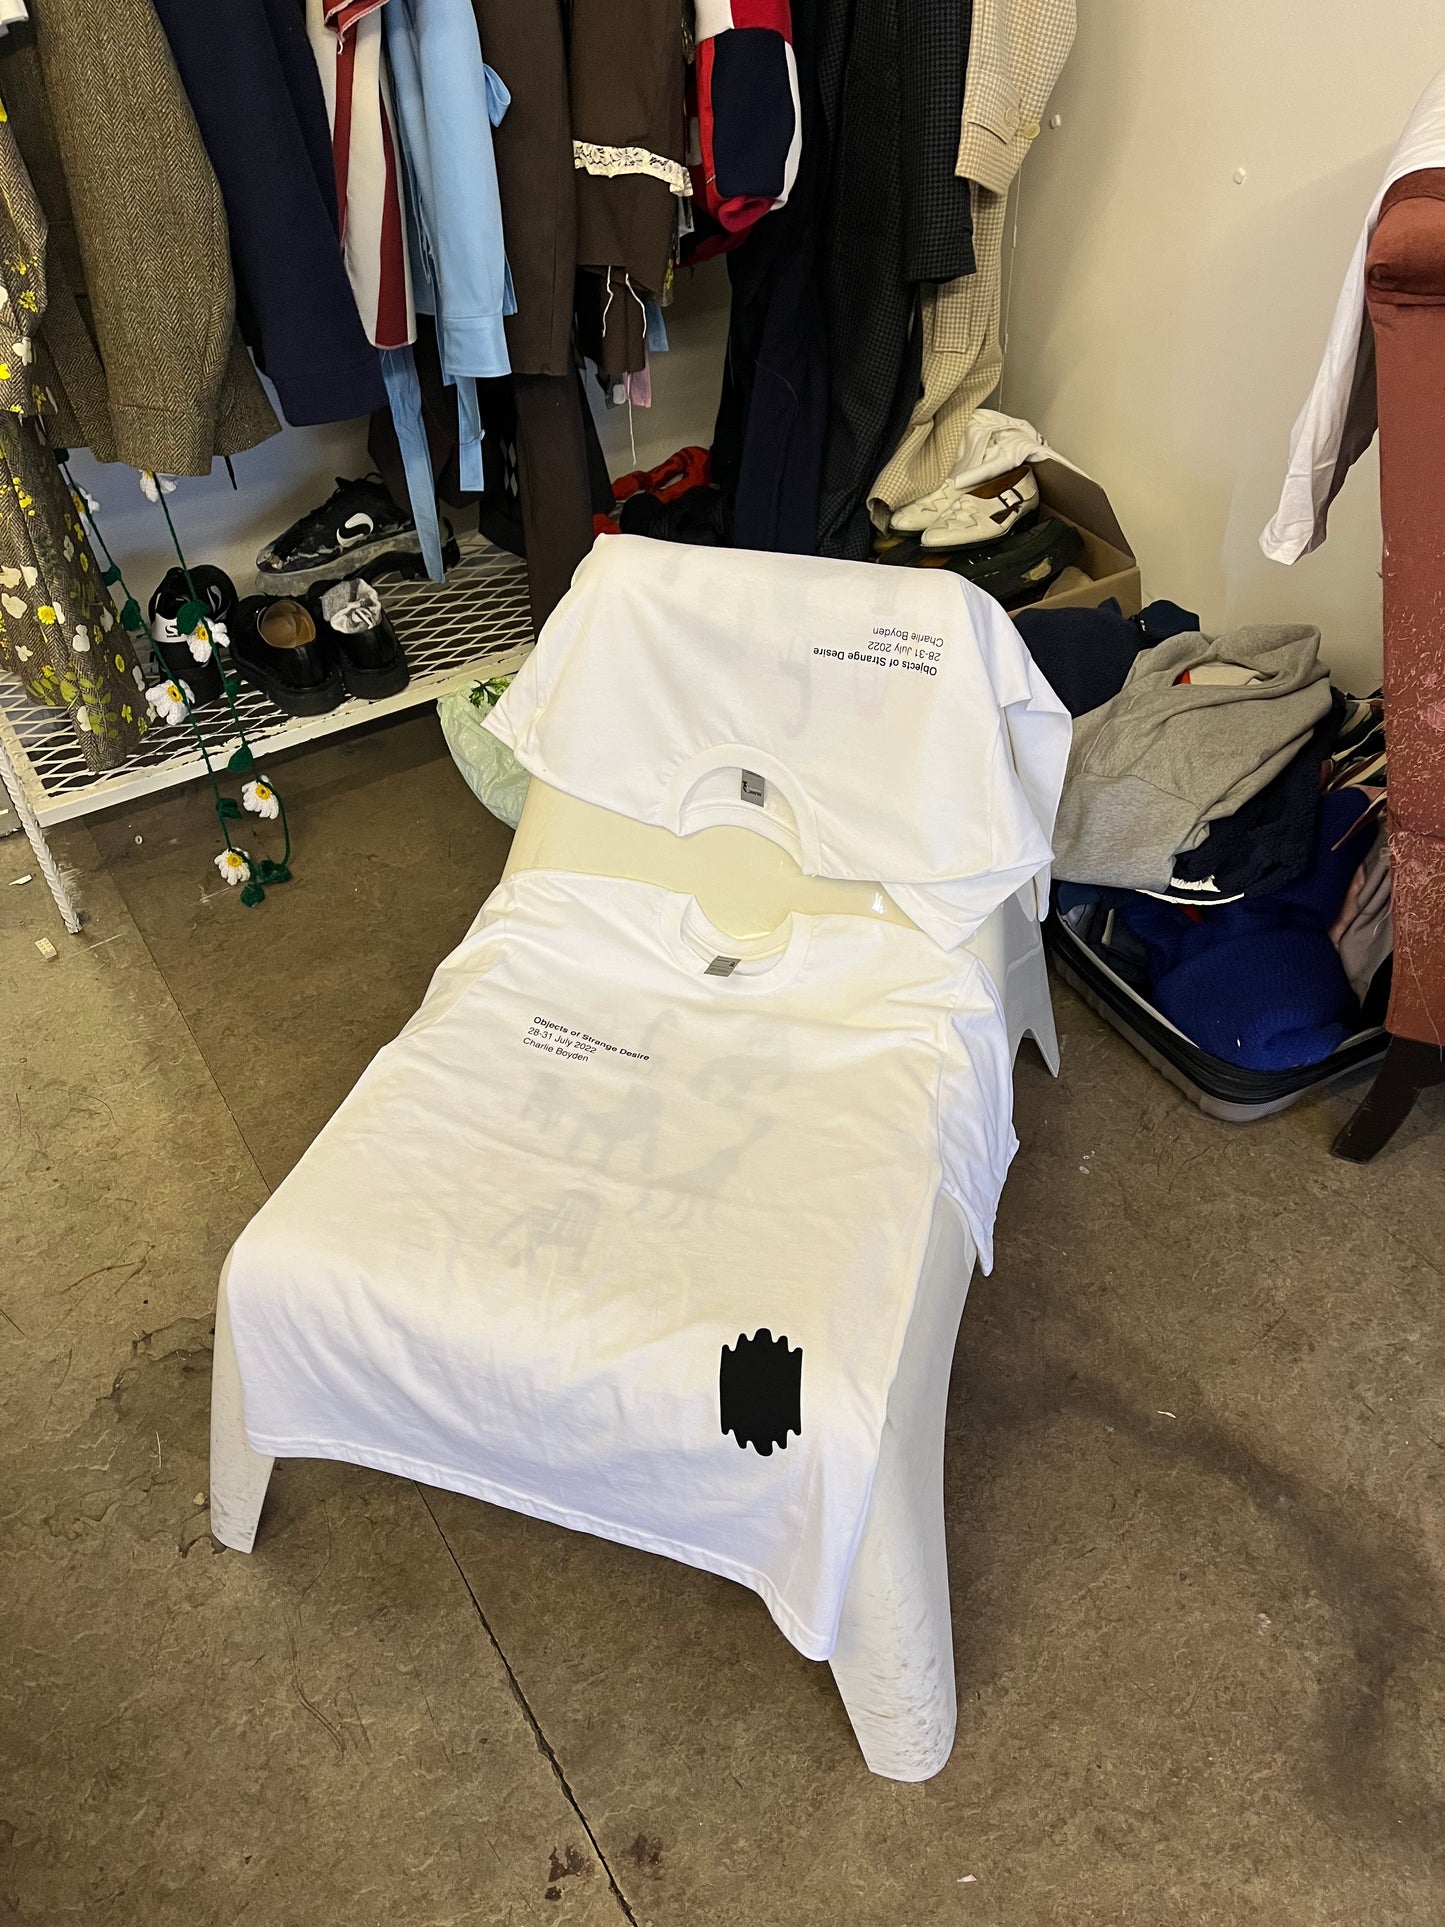 Chair T-shirt